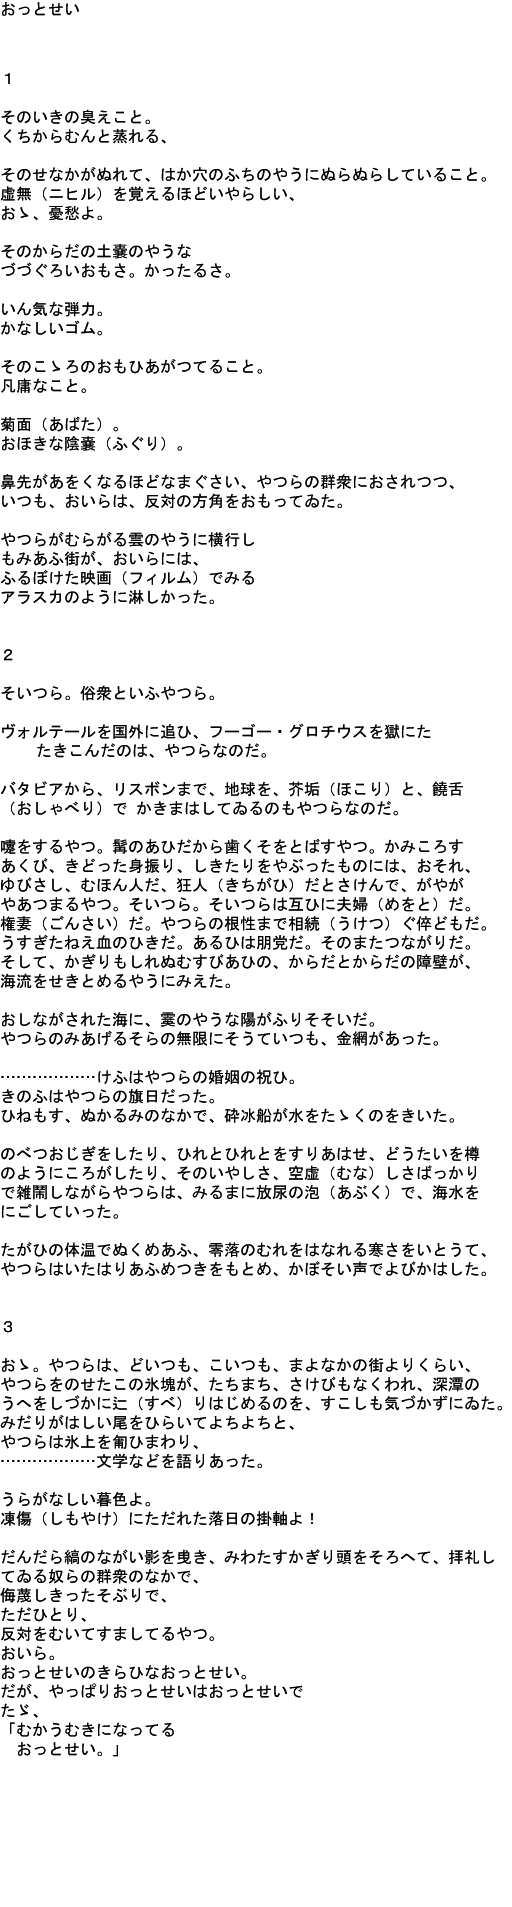 Mitsuharu Kaneko SEALS poem Mitsuharu Kaneko Japan Poetry International